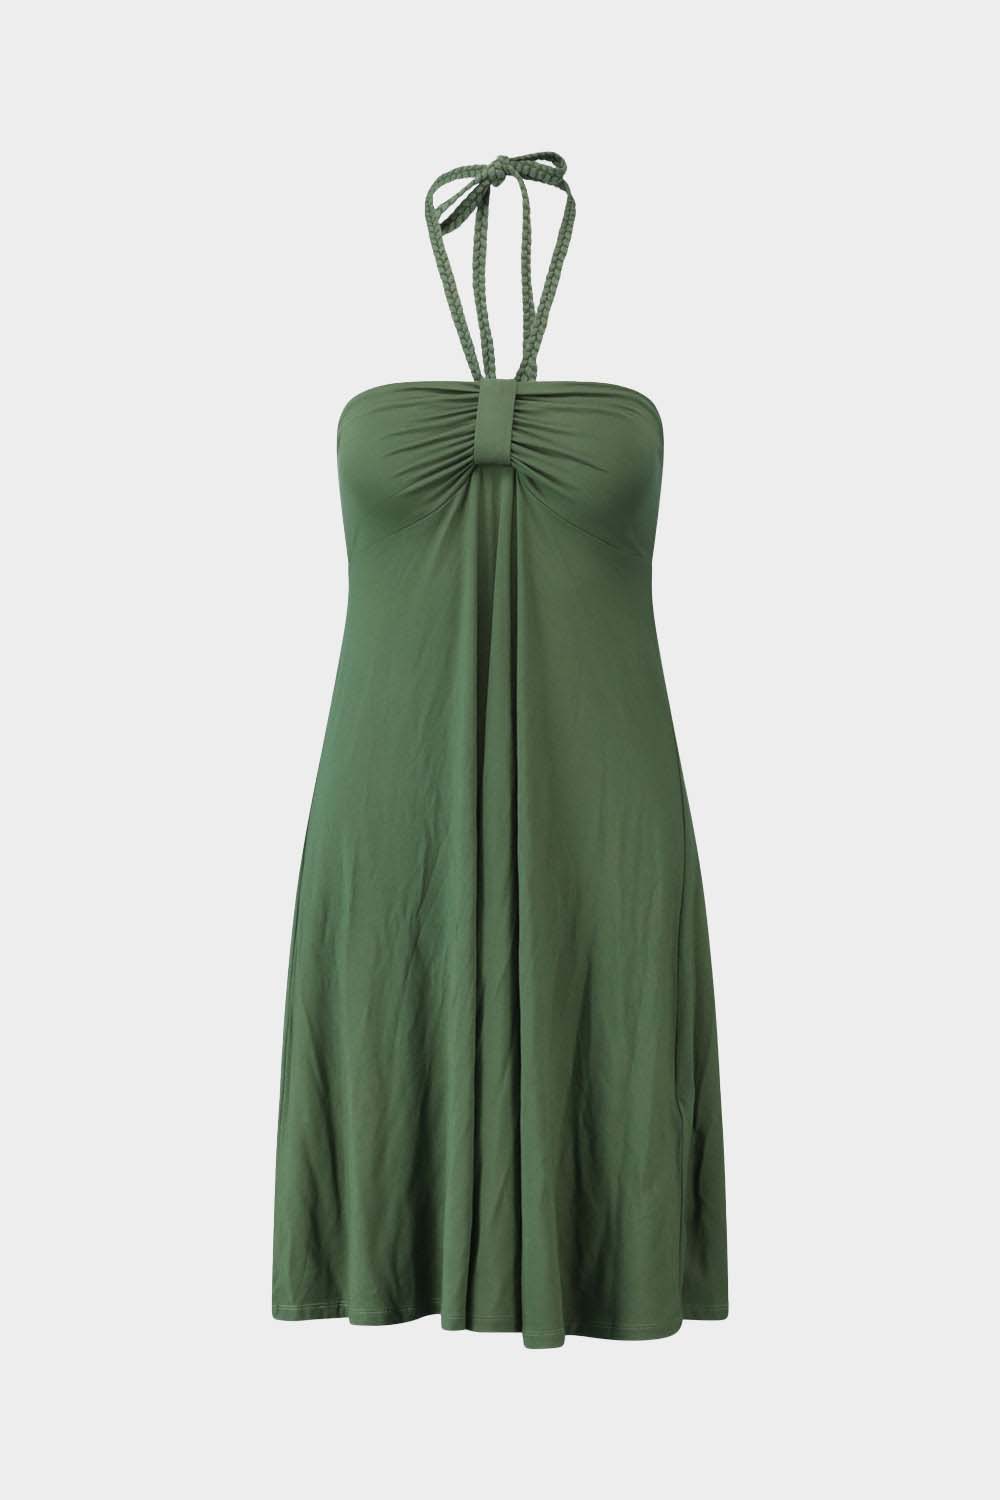 שמלה קצרה לנשים תכשיט כוכב LIU JO Vendome online | ונדום .